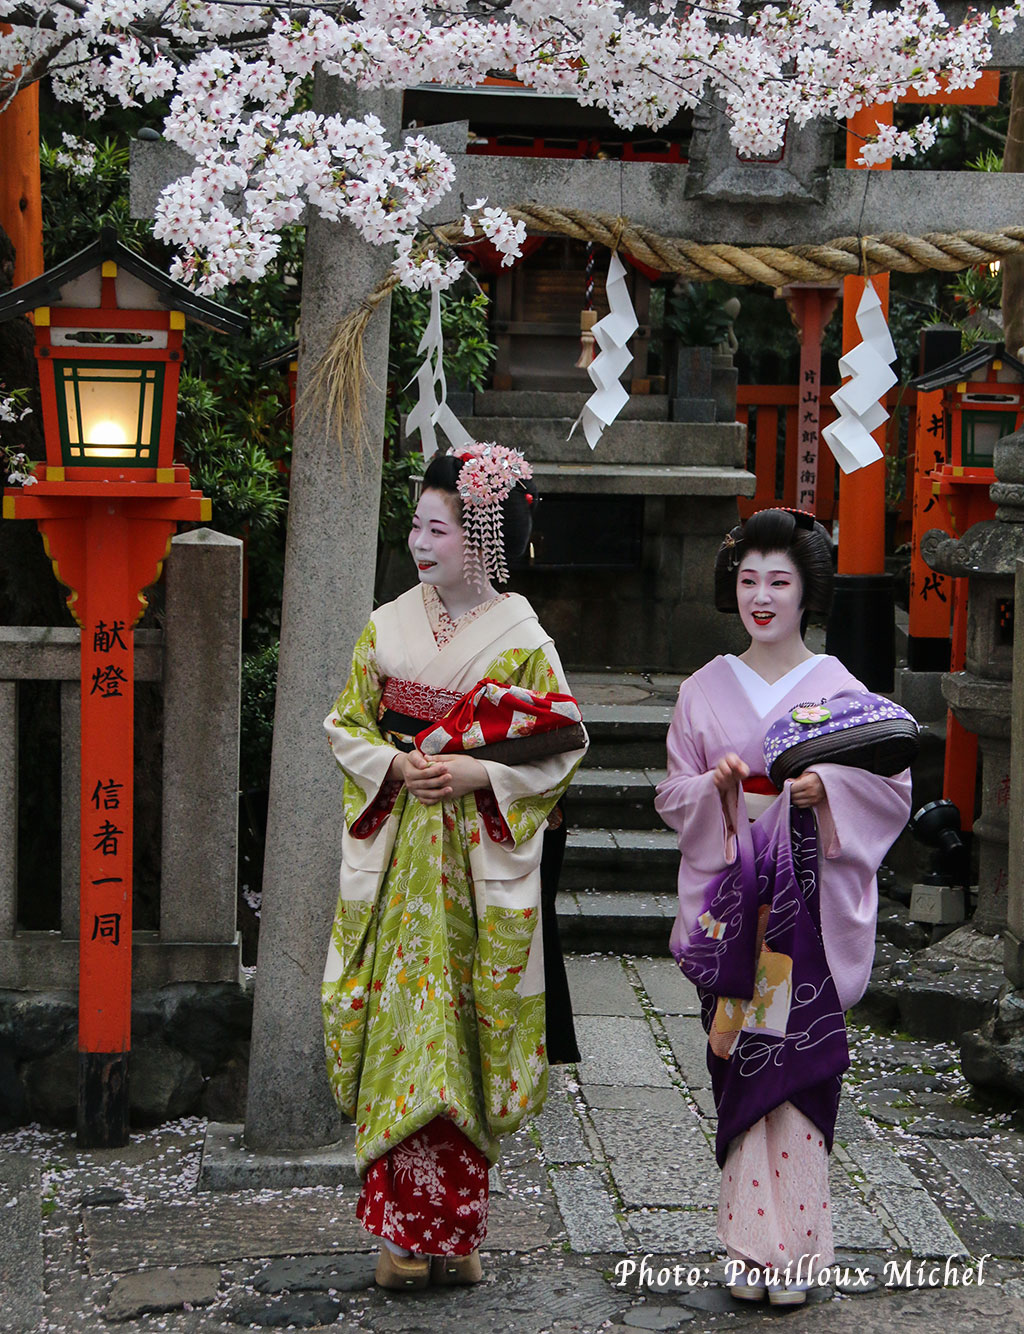 Une Geisha (à droite dans l'image) et une Mayko (apprentie geisha), Kyoto